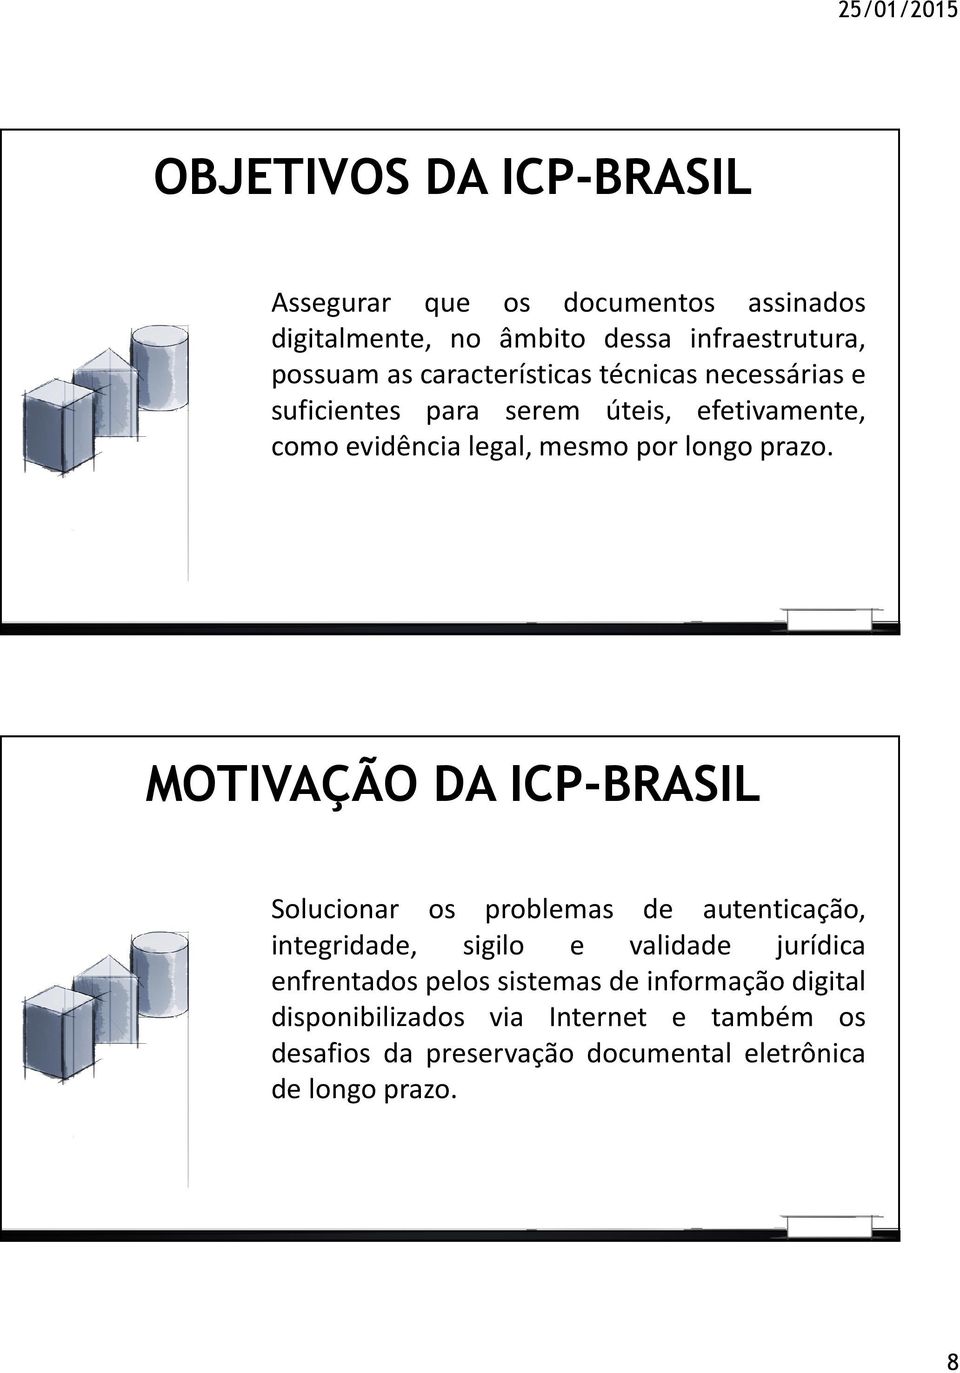 MOTIVAÇÃO DA ICP-BRASIL Solucionar os problemas de autenticação, integridade, sigilo e validade jurídica enfrentados pelos